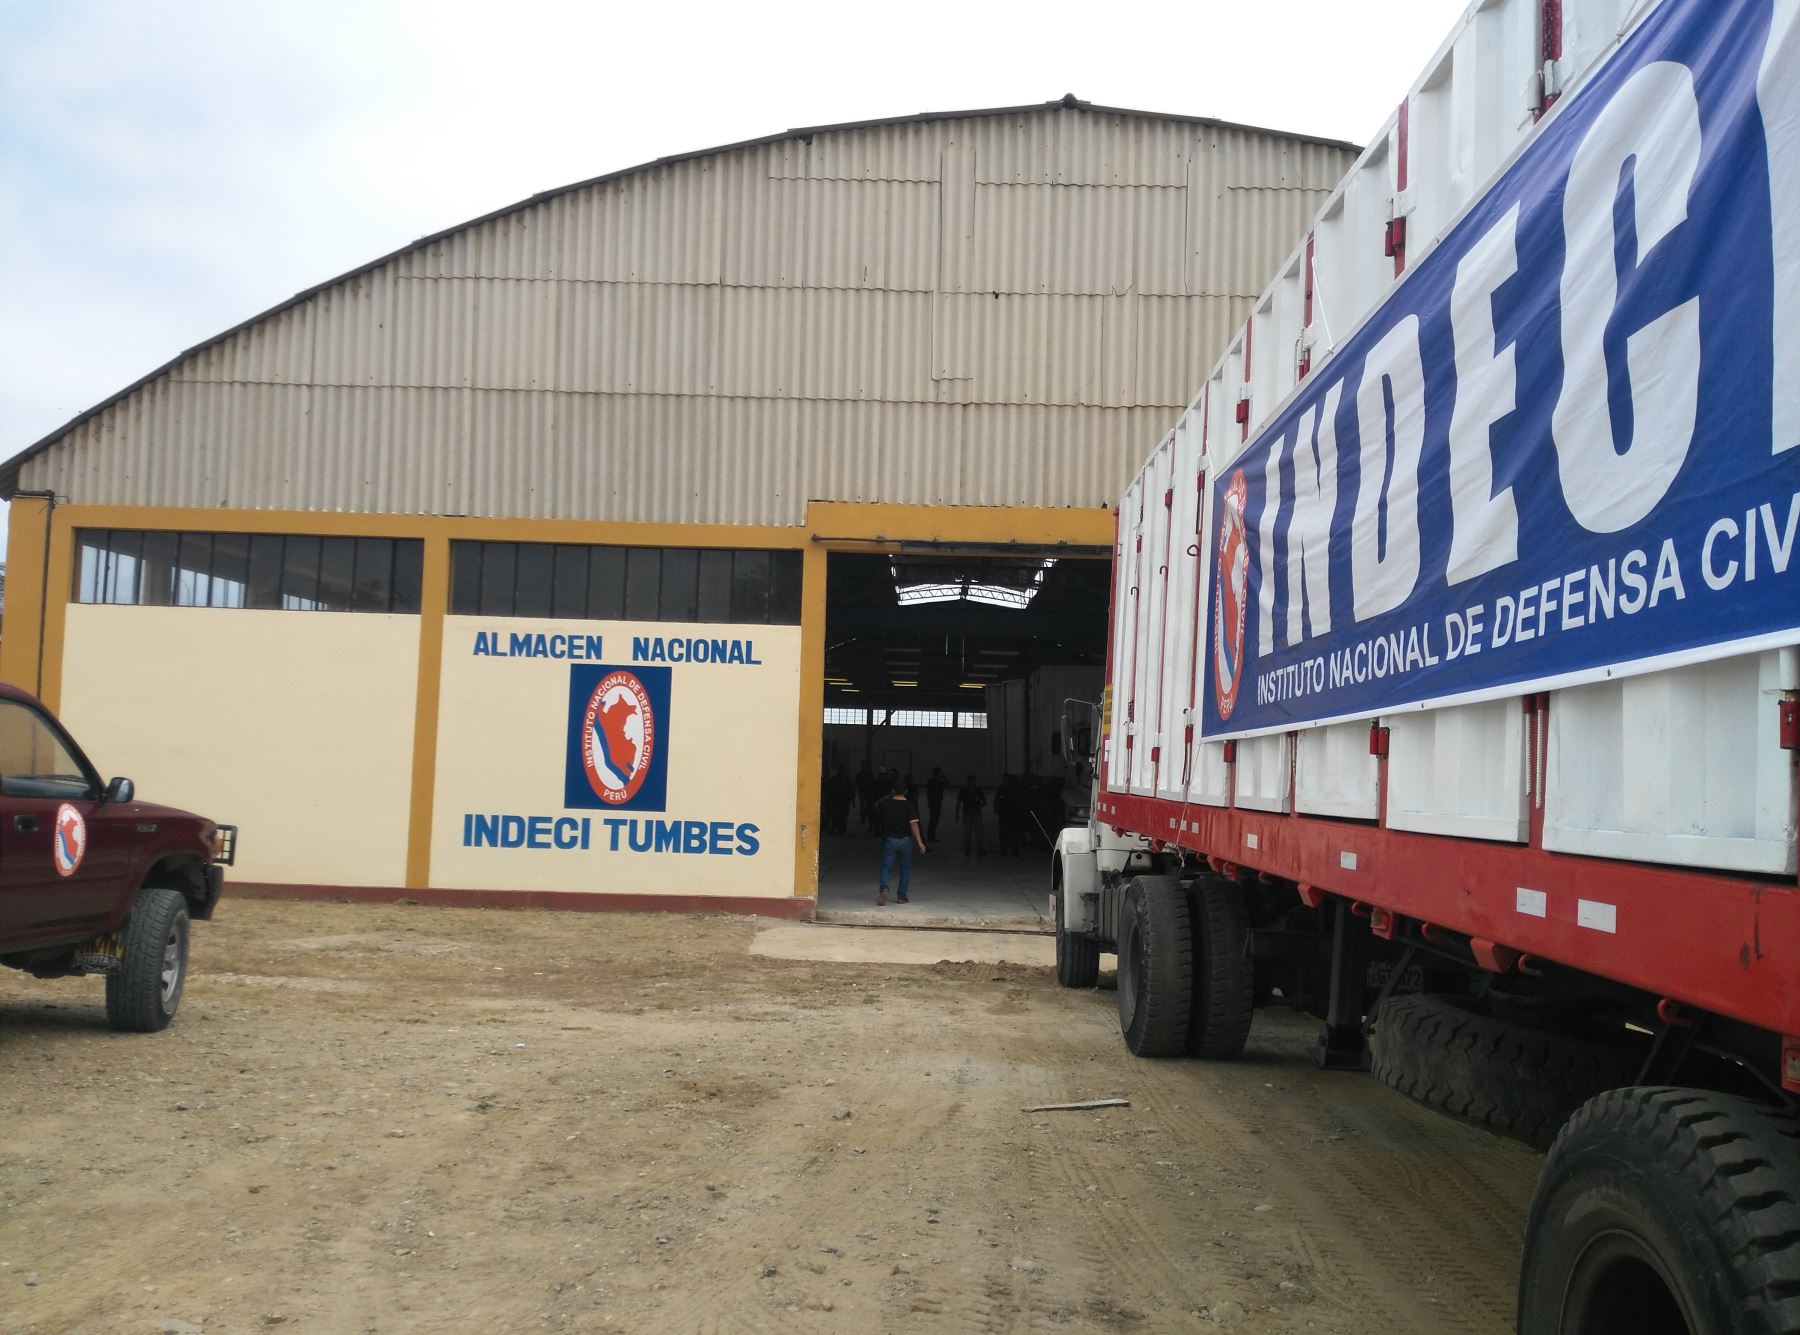 El Instituto Nacional de Defensa Civil (Indeci) construye en el distrito de Atico un almacén que permitirá ampliar la capacidad de almacenaje de ayuda humanitaria para atender de manera oportuna las emergencias que ocurran en esa localidad arequipeña.